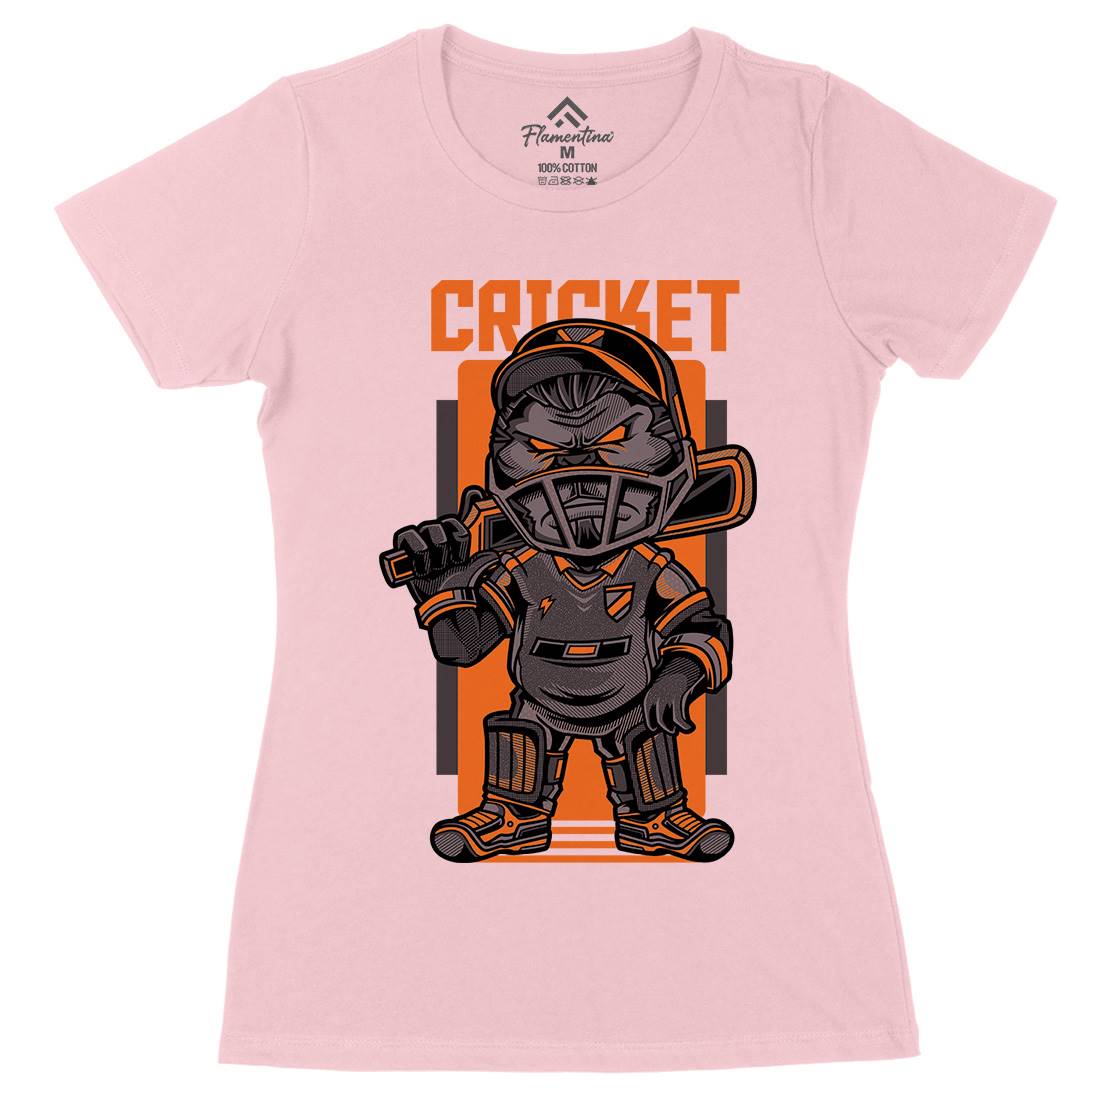 Cricket Womens Organic Crew Neck T-Shirt Sport D739